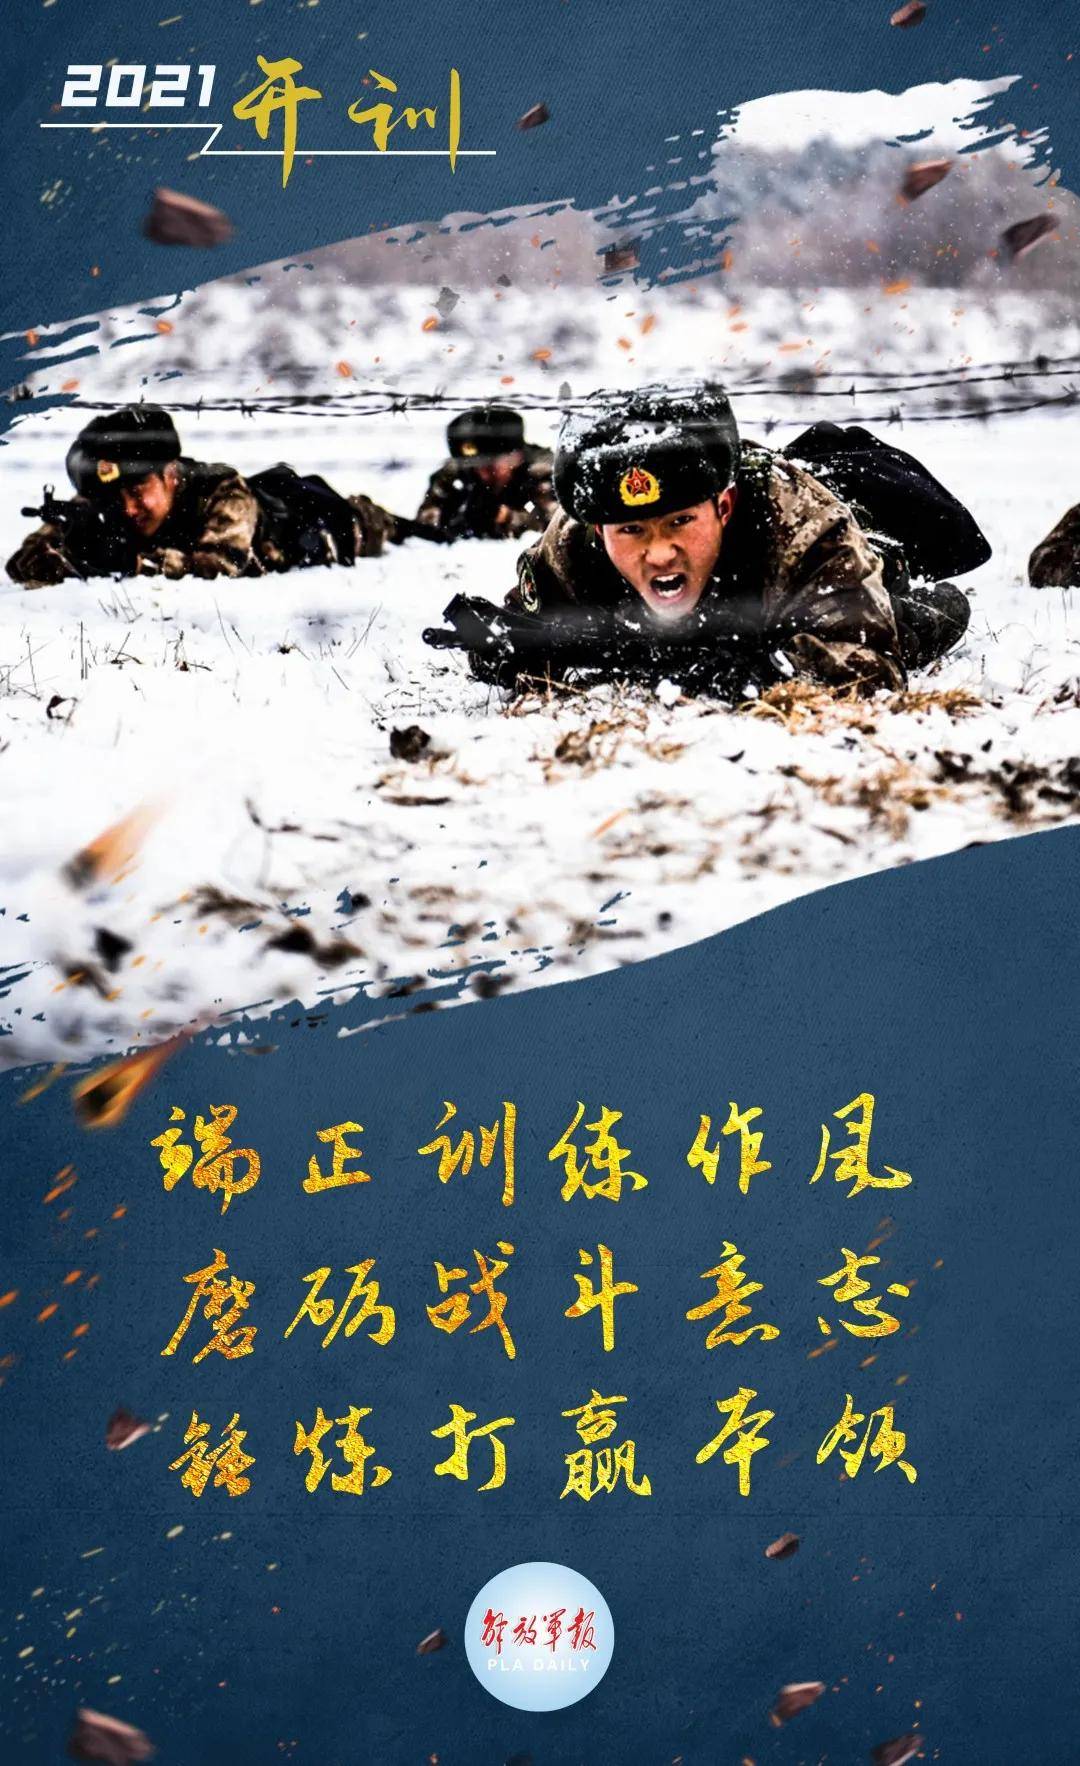 中央军委主席习近平 签署中央军委2021年1号命令 向全军发布开训动员